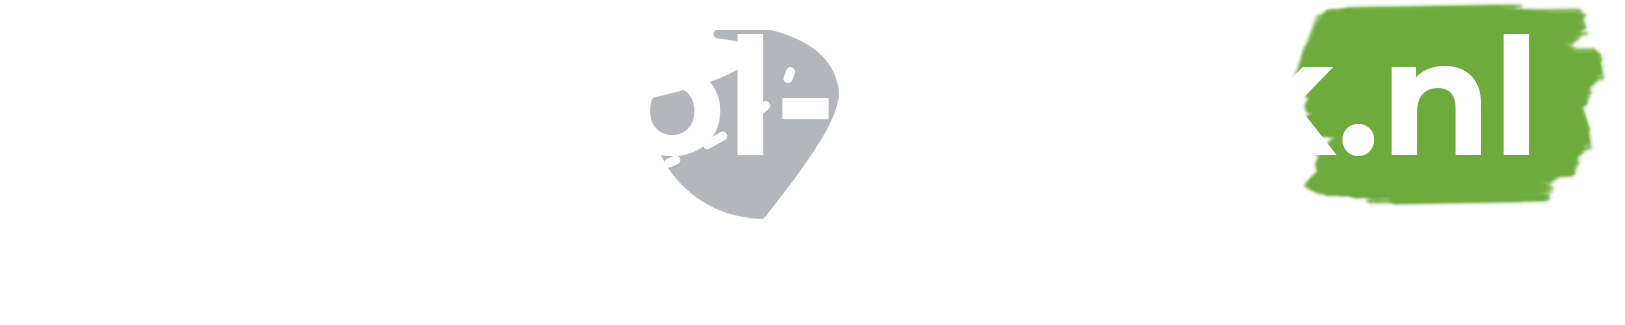 Rijschool Uniek logo Ieder is uniek!